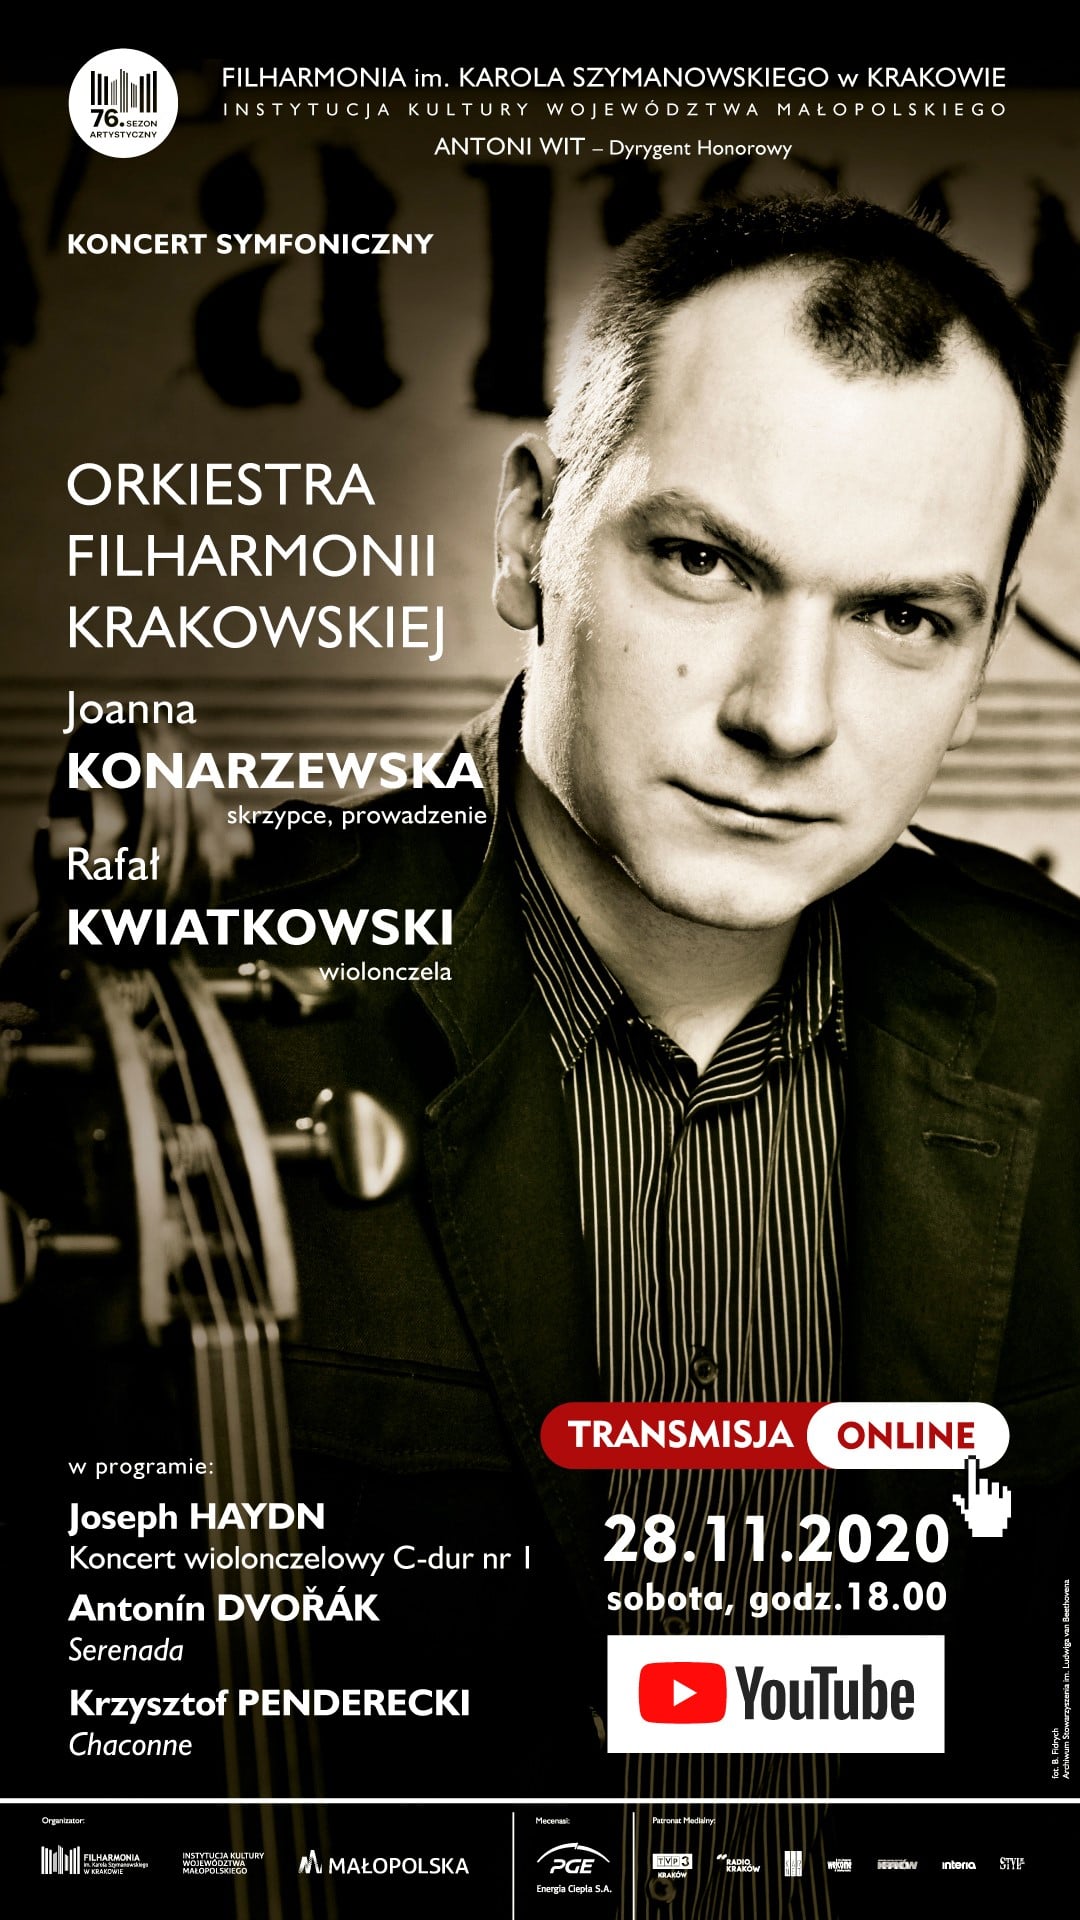 Koncert symfoniczny w Filharmonii Krakowskiej. Plakat koncertu organizowanego 28 listopada 2020 roku